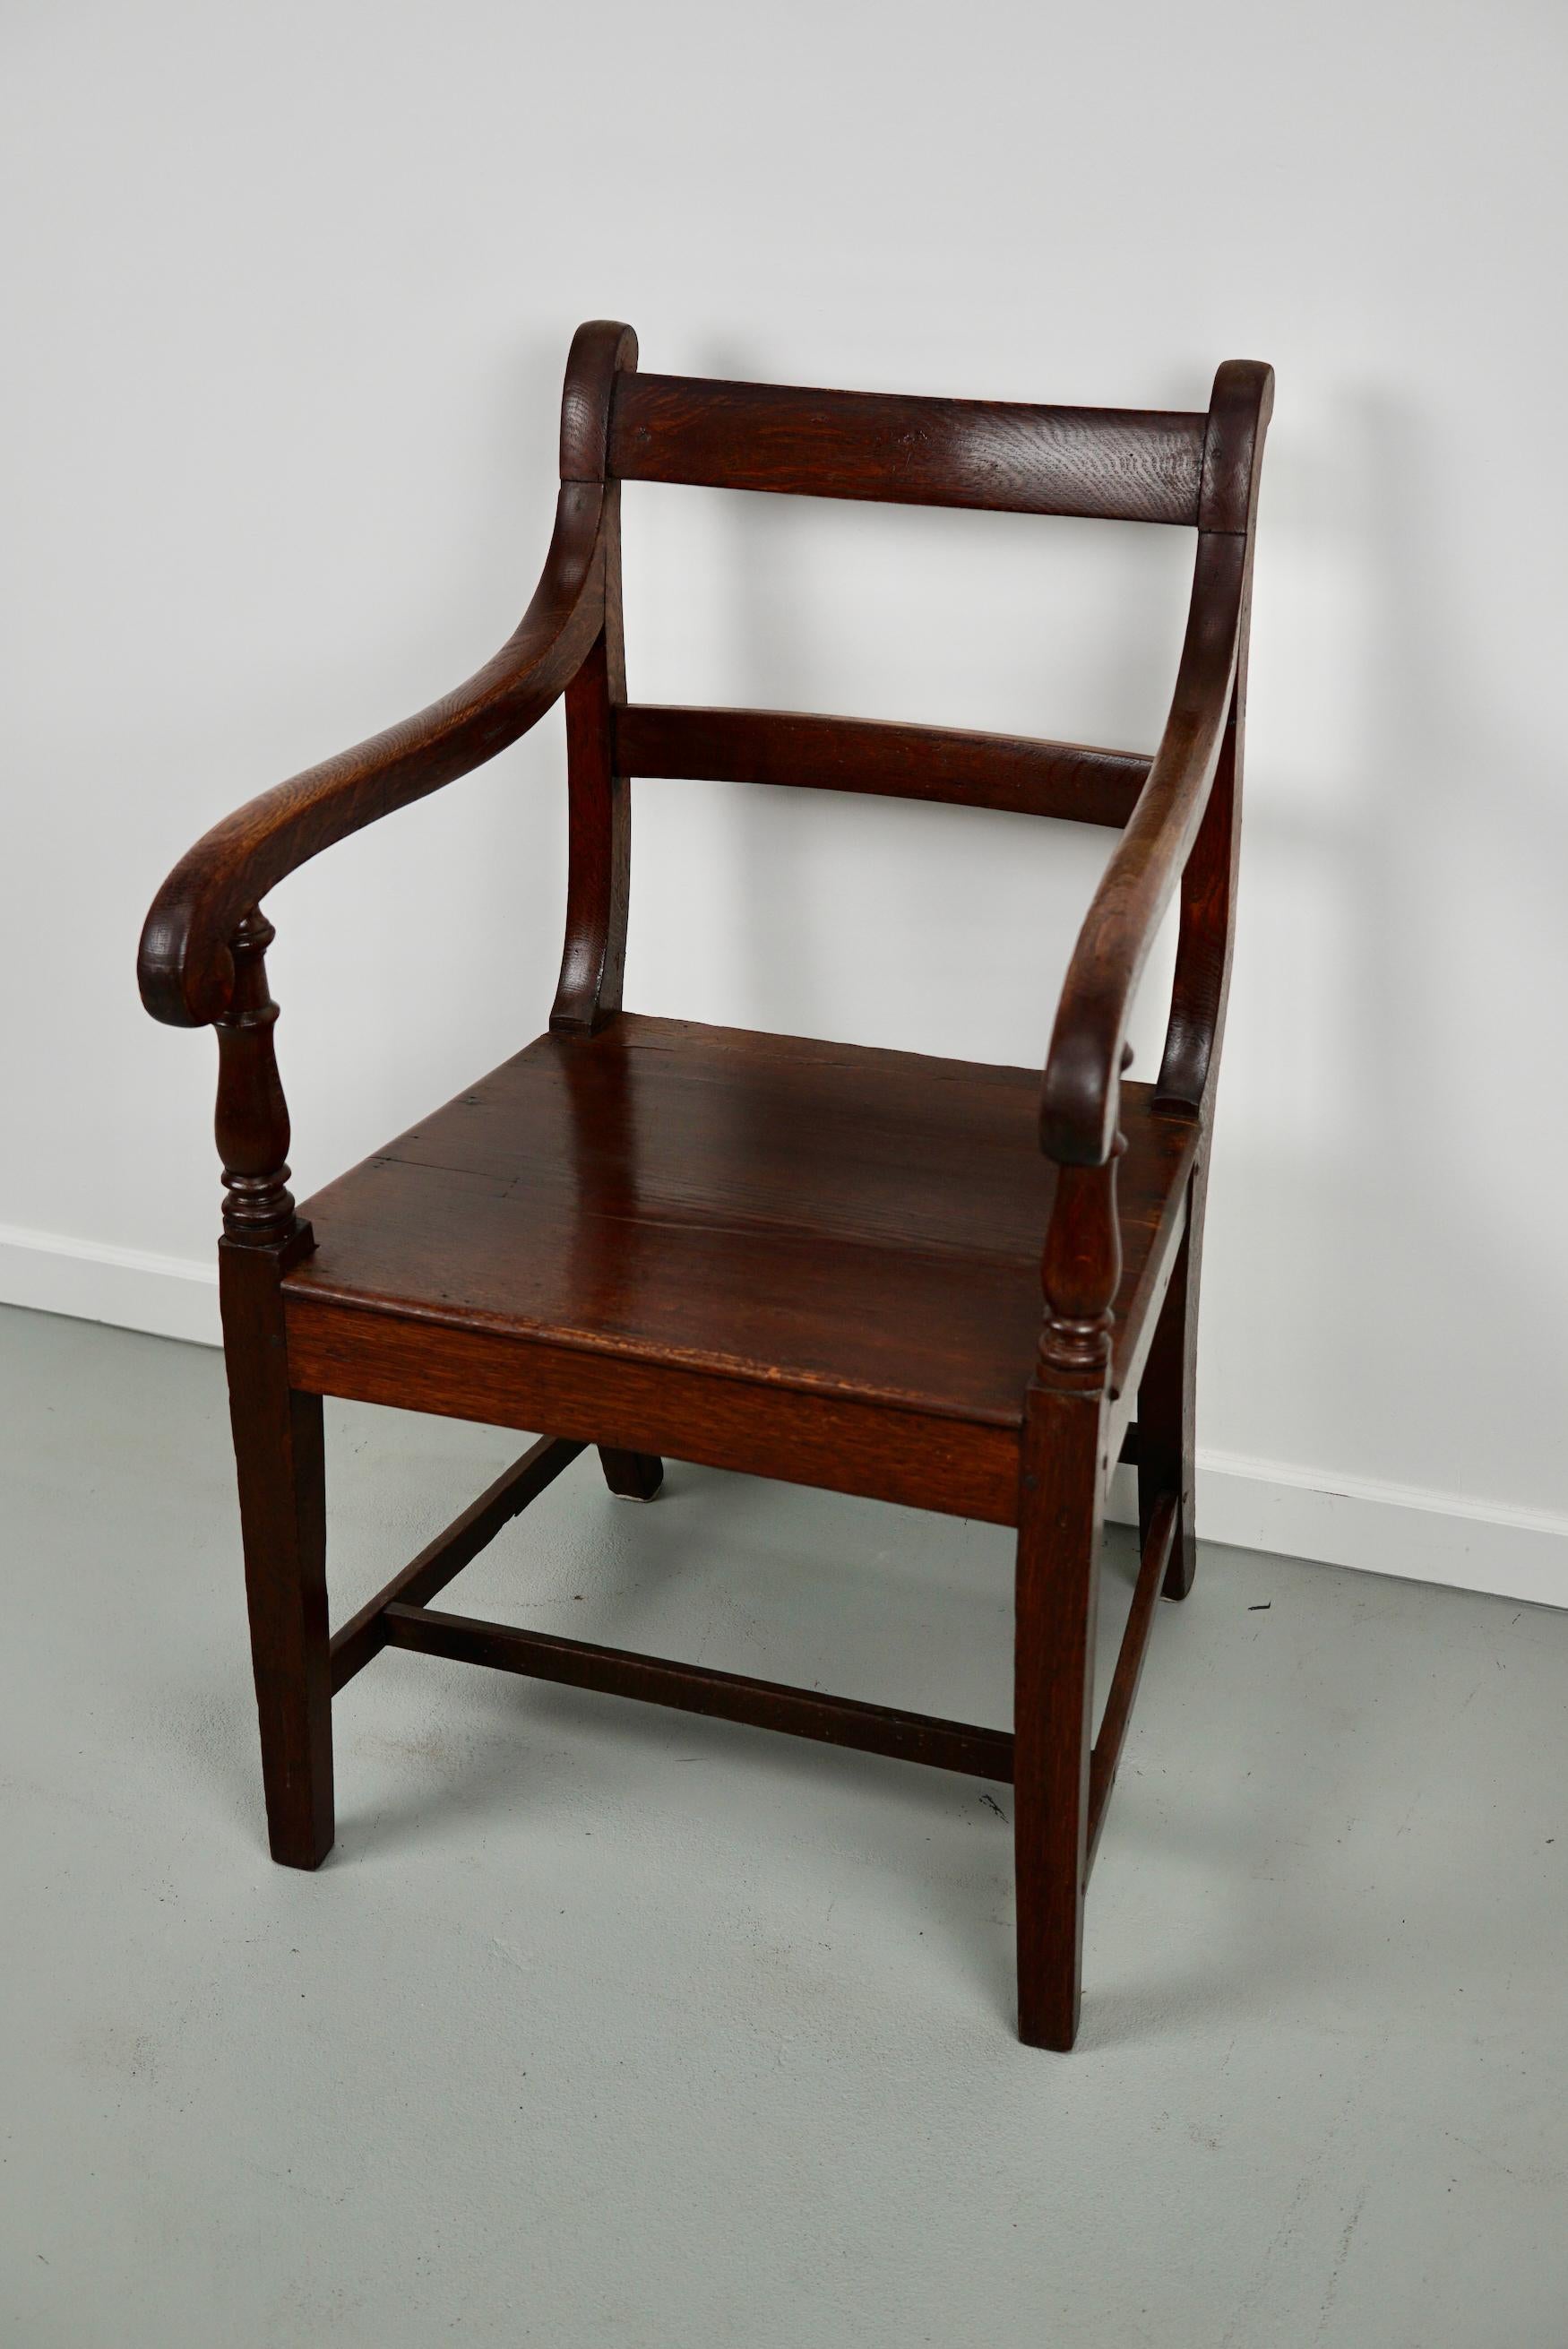 Dieser Sessel wurde im 18. Jahrhundert in England hergestellt. Es bleibt in einem sehr guten Zustand mit einer schönen warmen Farbe und Patina.